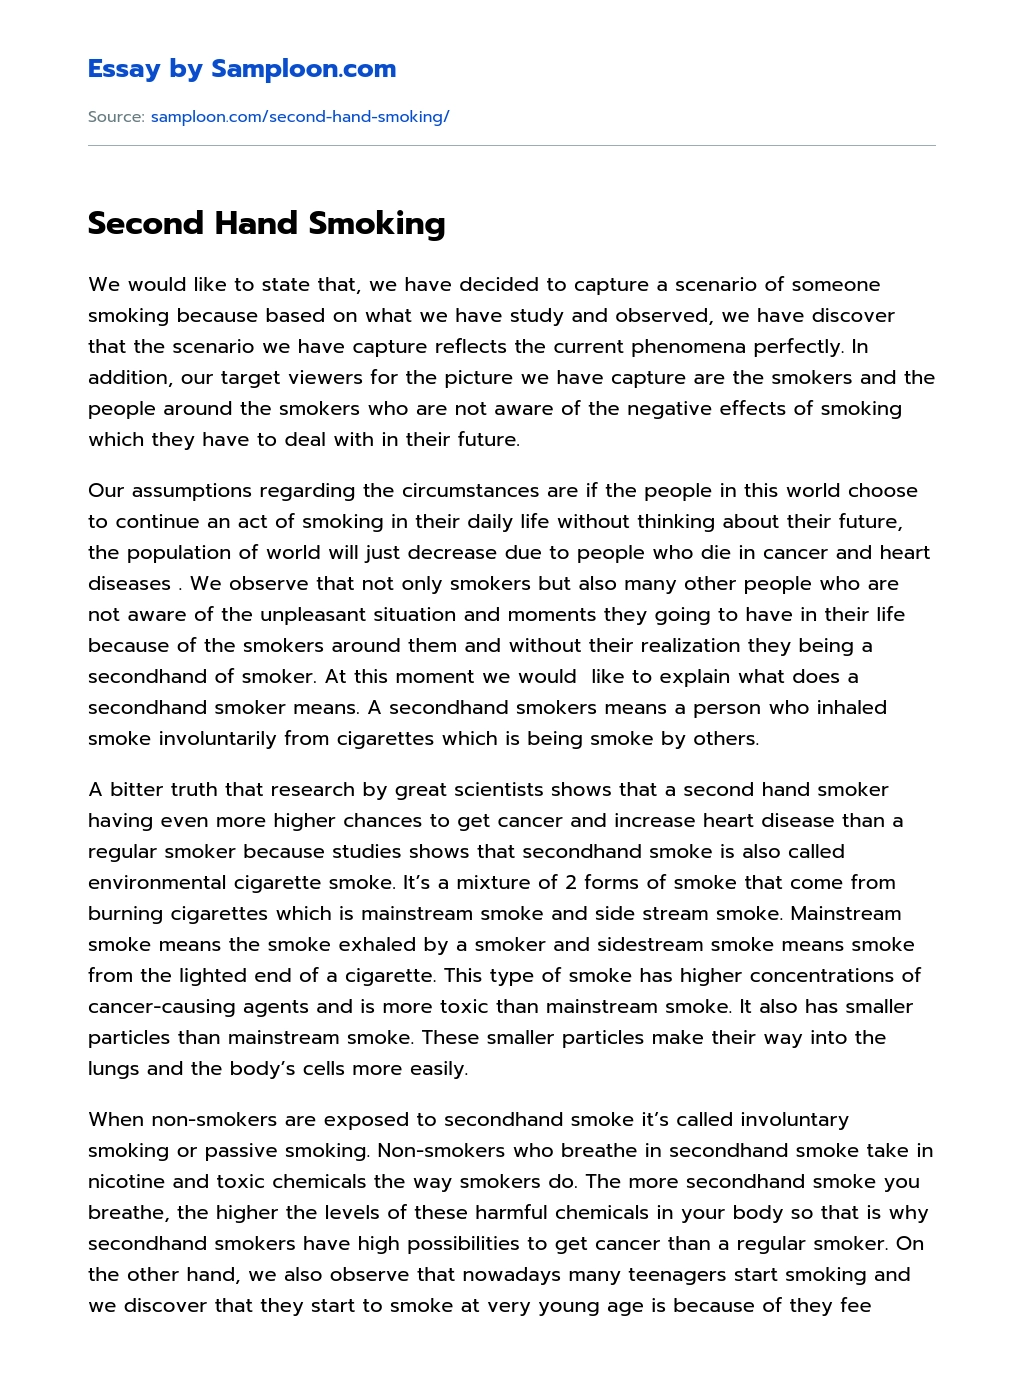 Second Hand Smoking essay